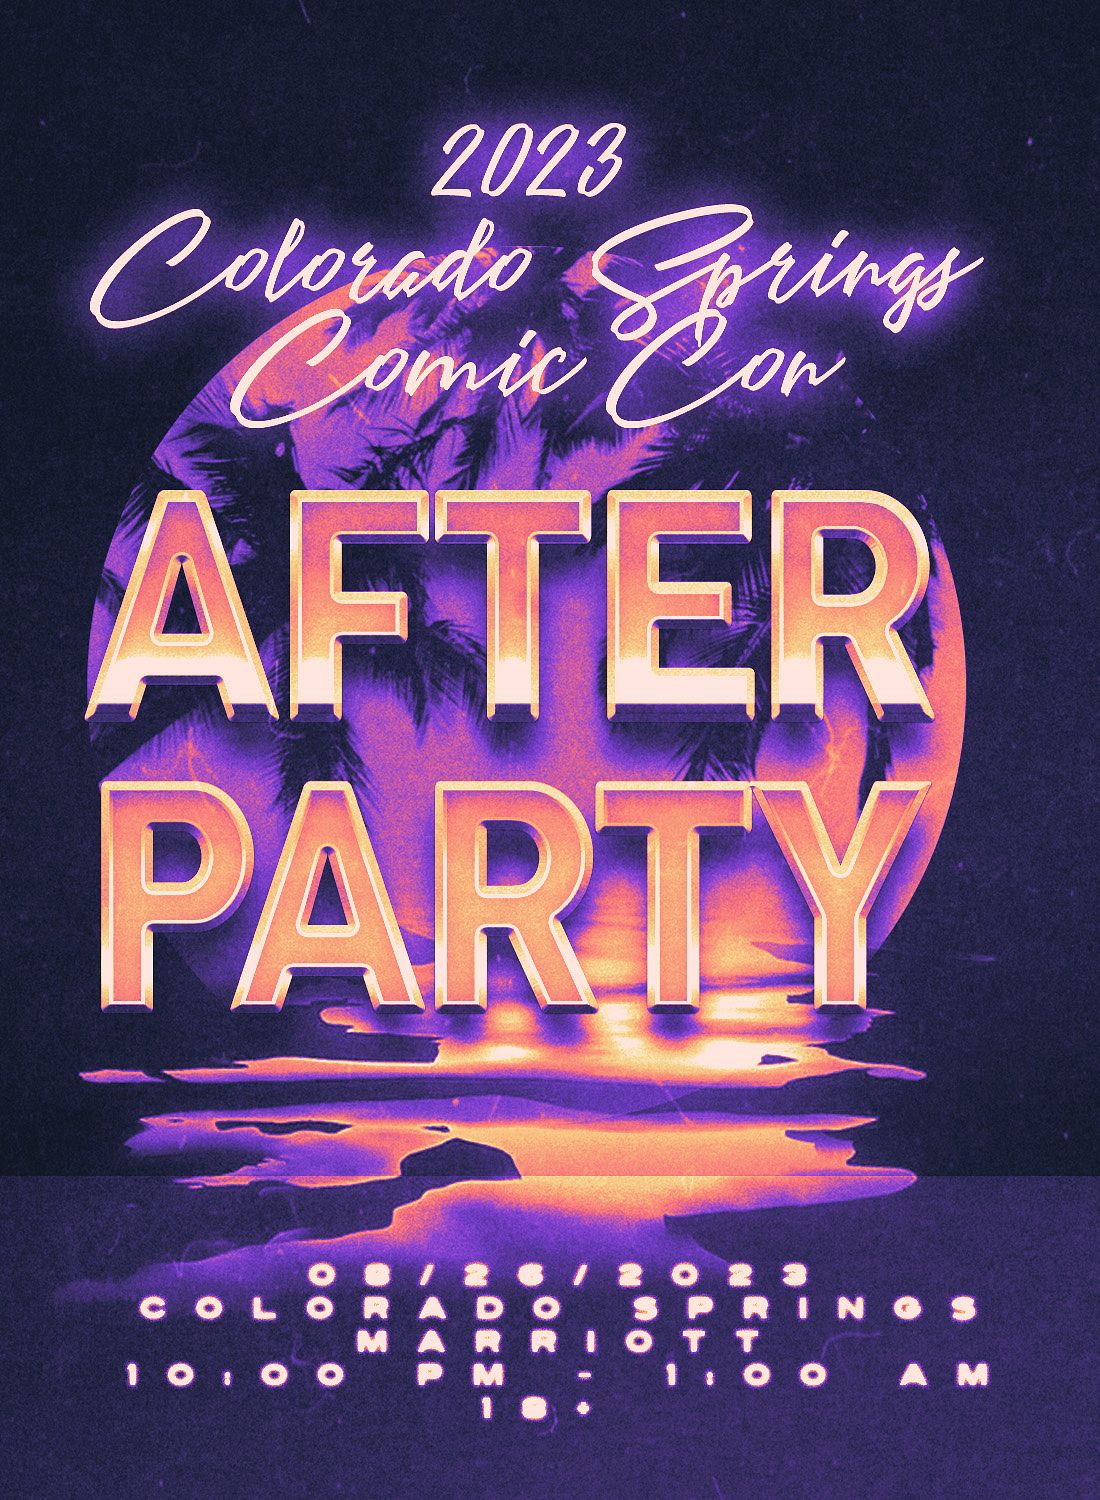 Colorado Springs Comic Con After Party Tickets at Colorado Springs